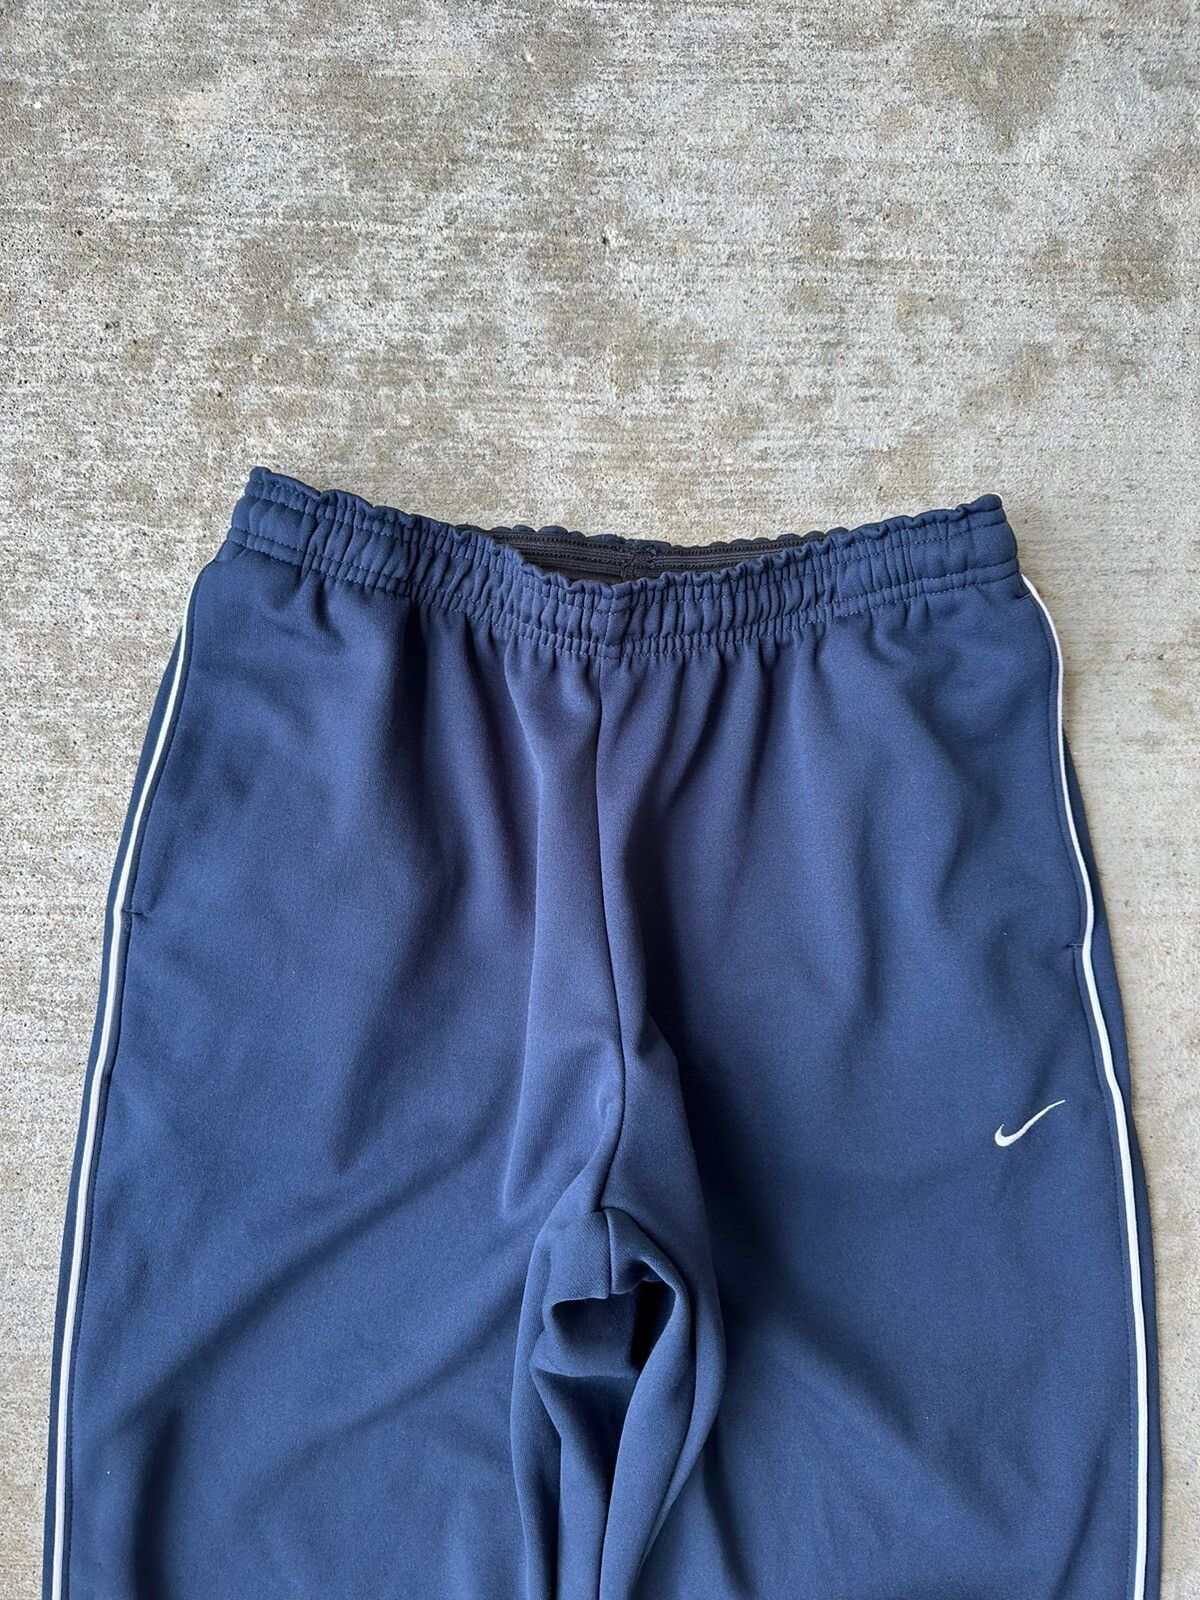 Nike Y2K Nike Track Drill Pants Size US 32 / EU 48 - 5 Thumbnail